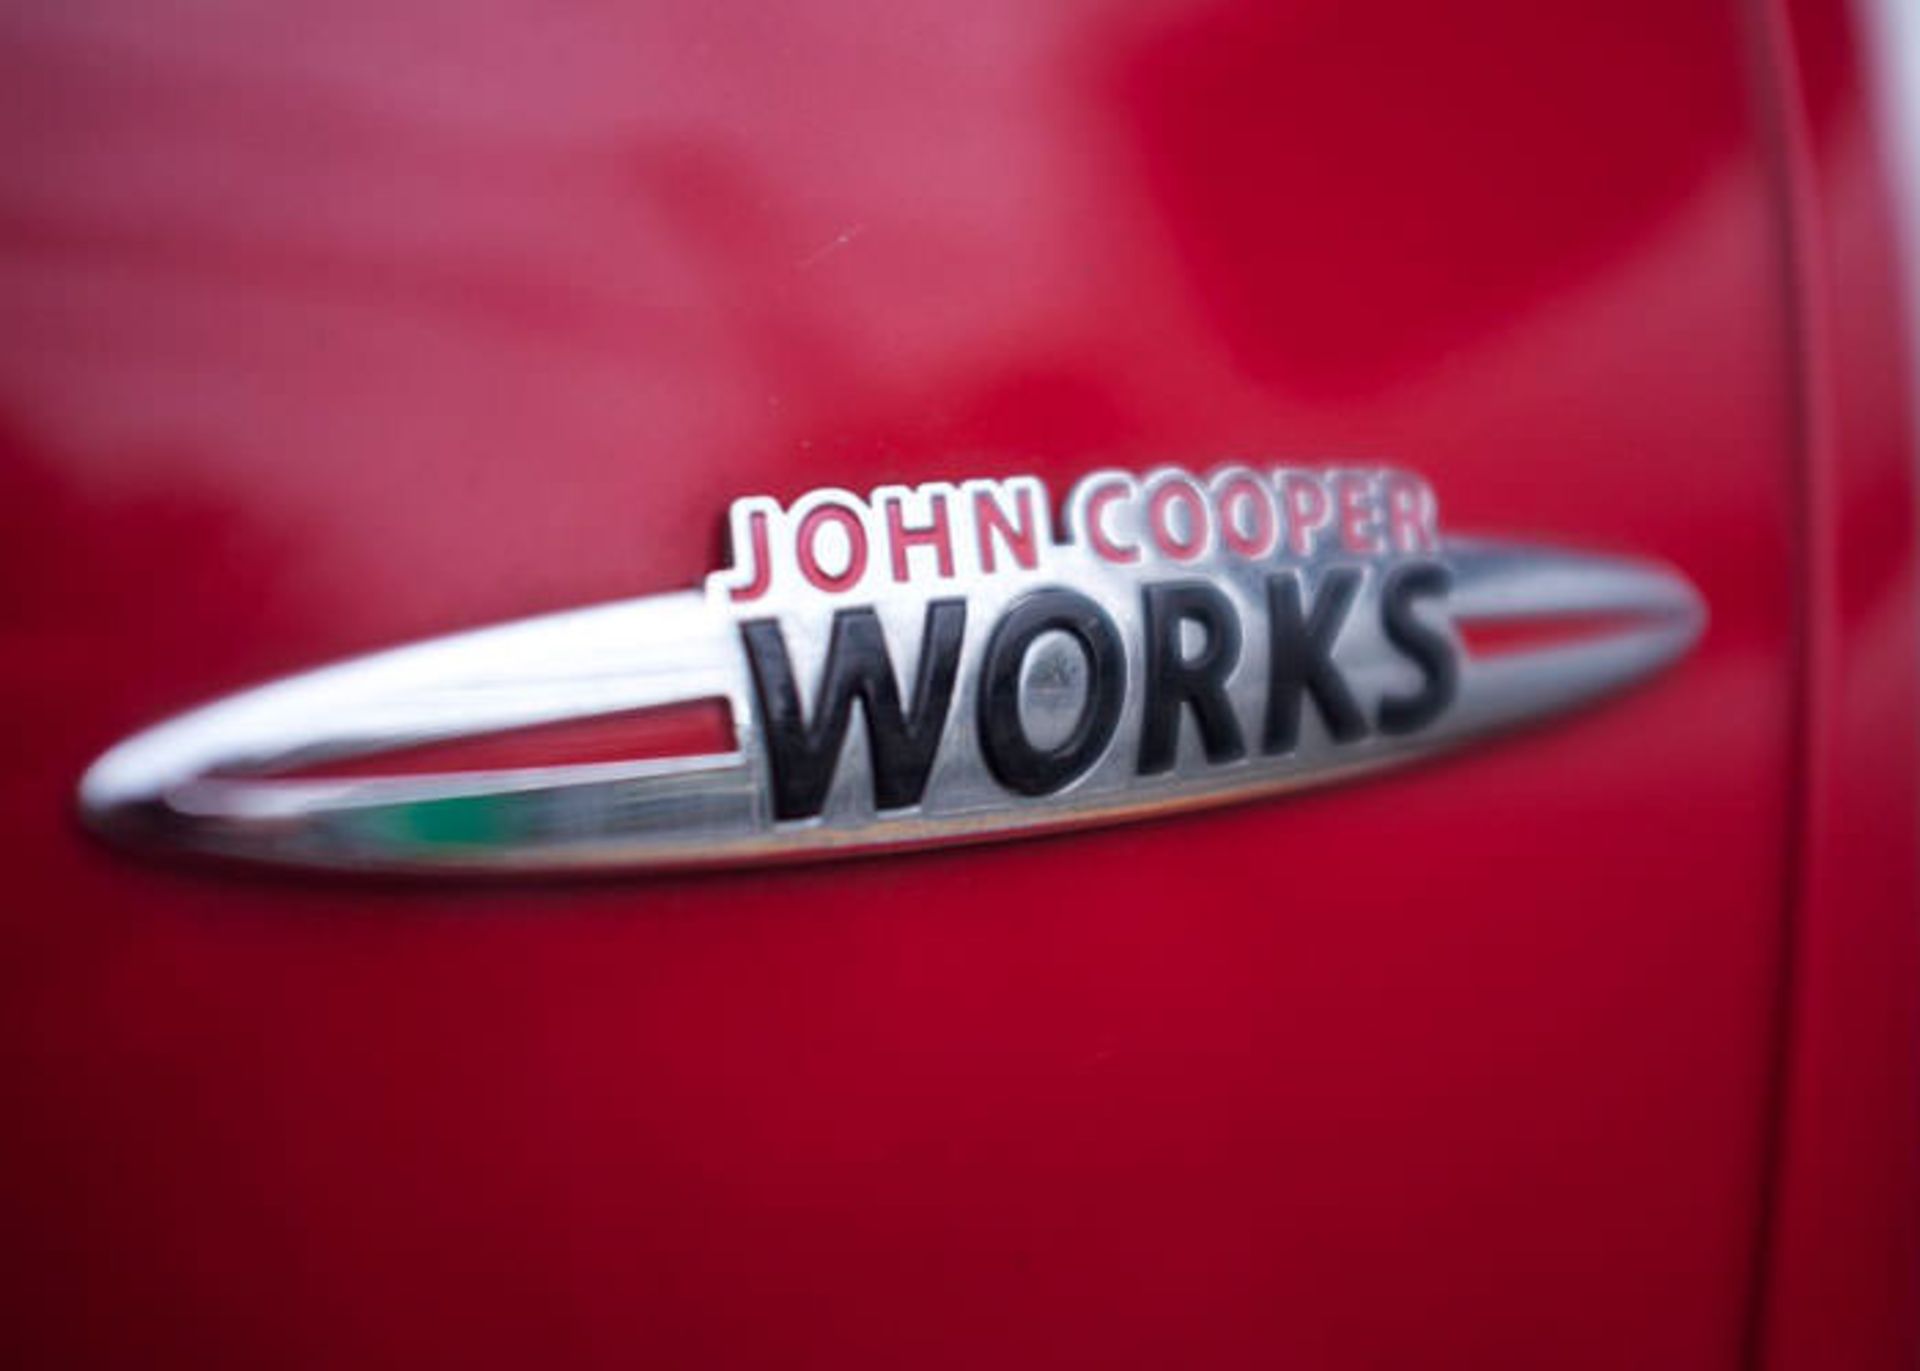 جان کوپر ورکز John Cooper Works